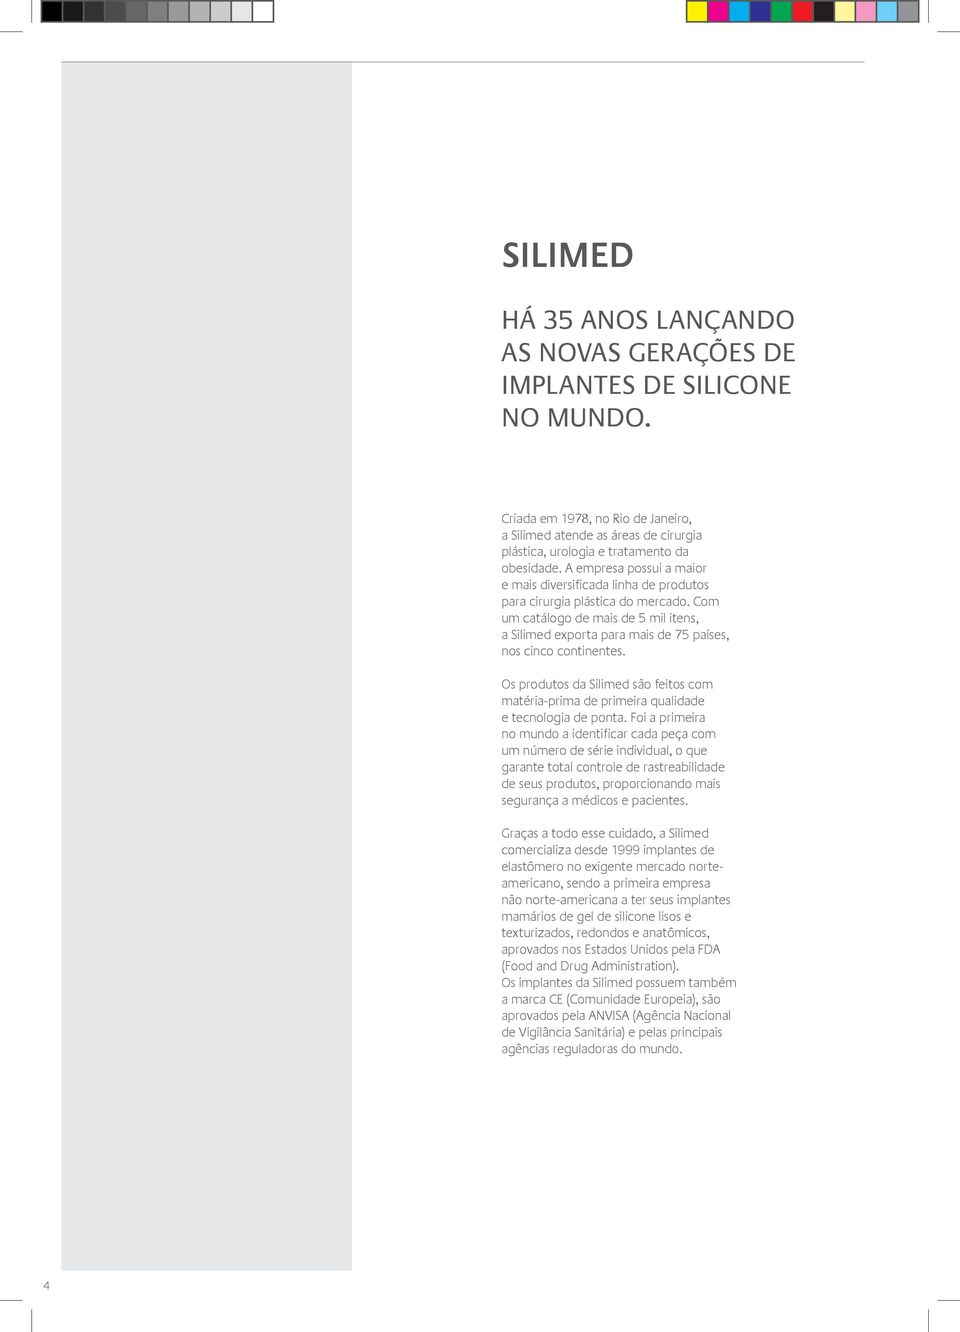 Com um catálogo de mais de 5 mil itens, a Silimed exporta para mais de 75 países, nos cinco continentes.